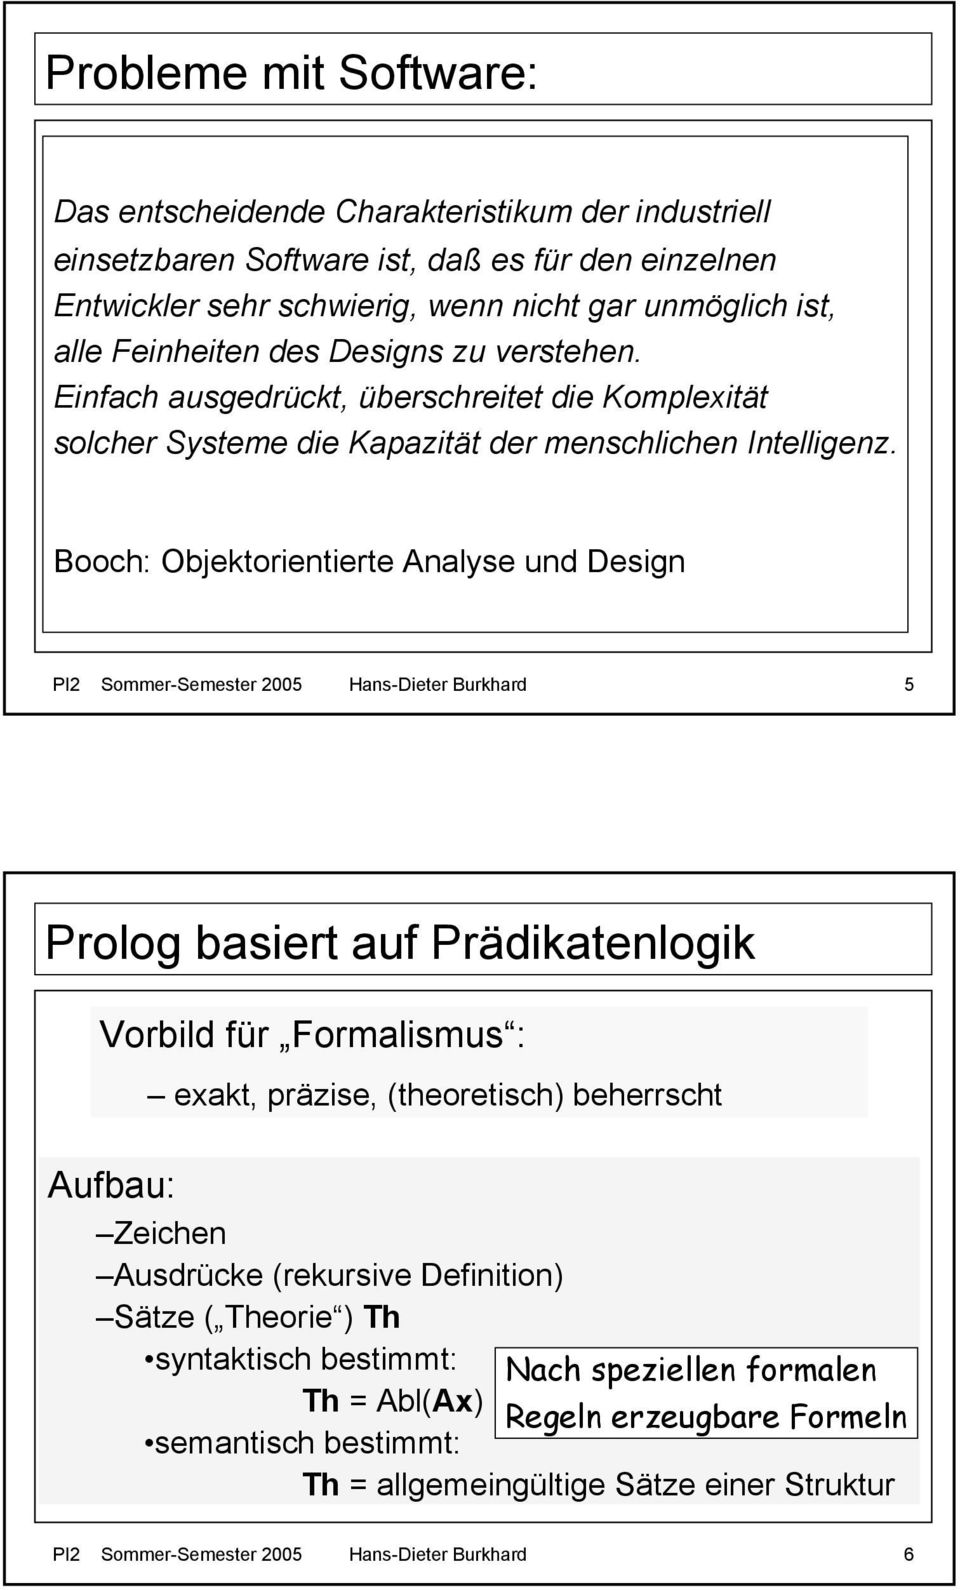 Booch: Objektorientierte Analyse und Design PI2 Sommer-Semester 2005 Hans-Dieter Burkhard 5 Prolog basiert auf Prädikatenlogik Vorbild für Formalismus : exakt, präzise, (theoretisch) beherrscht